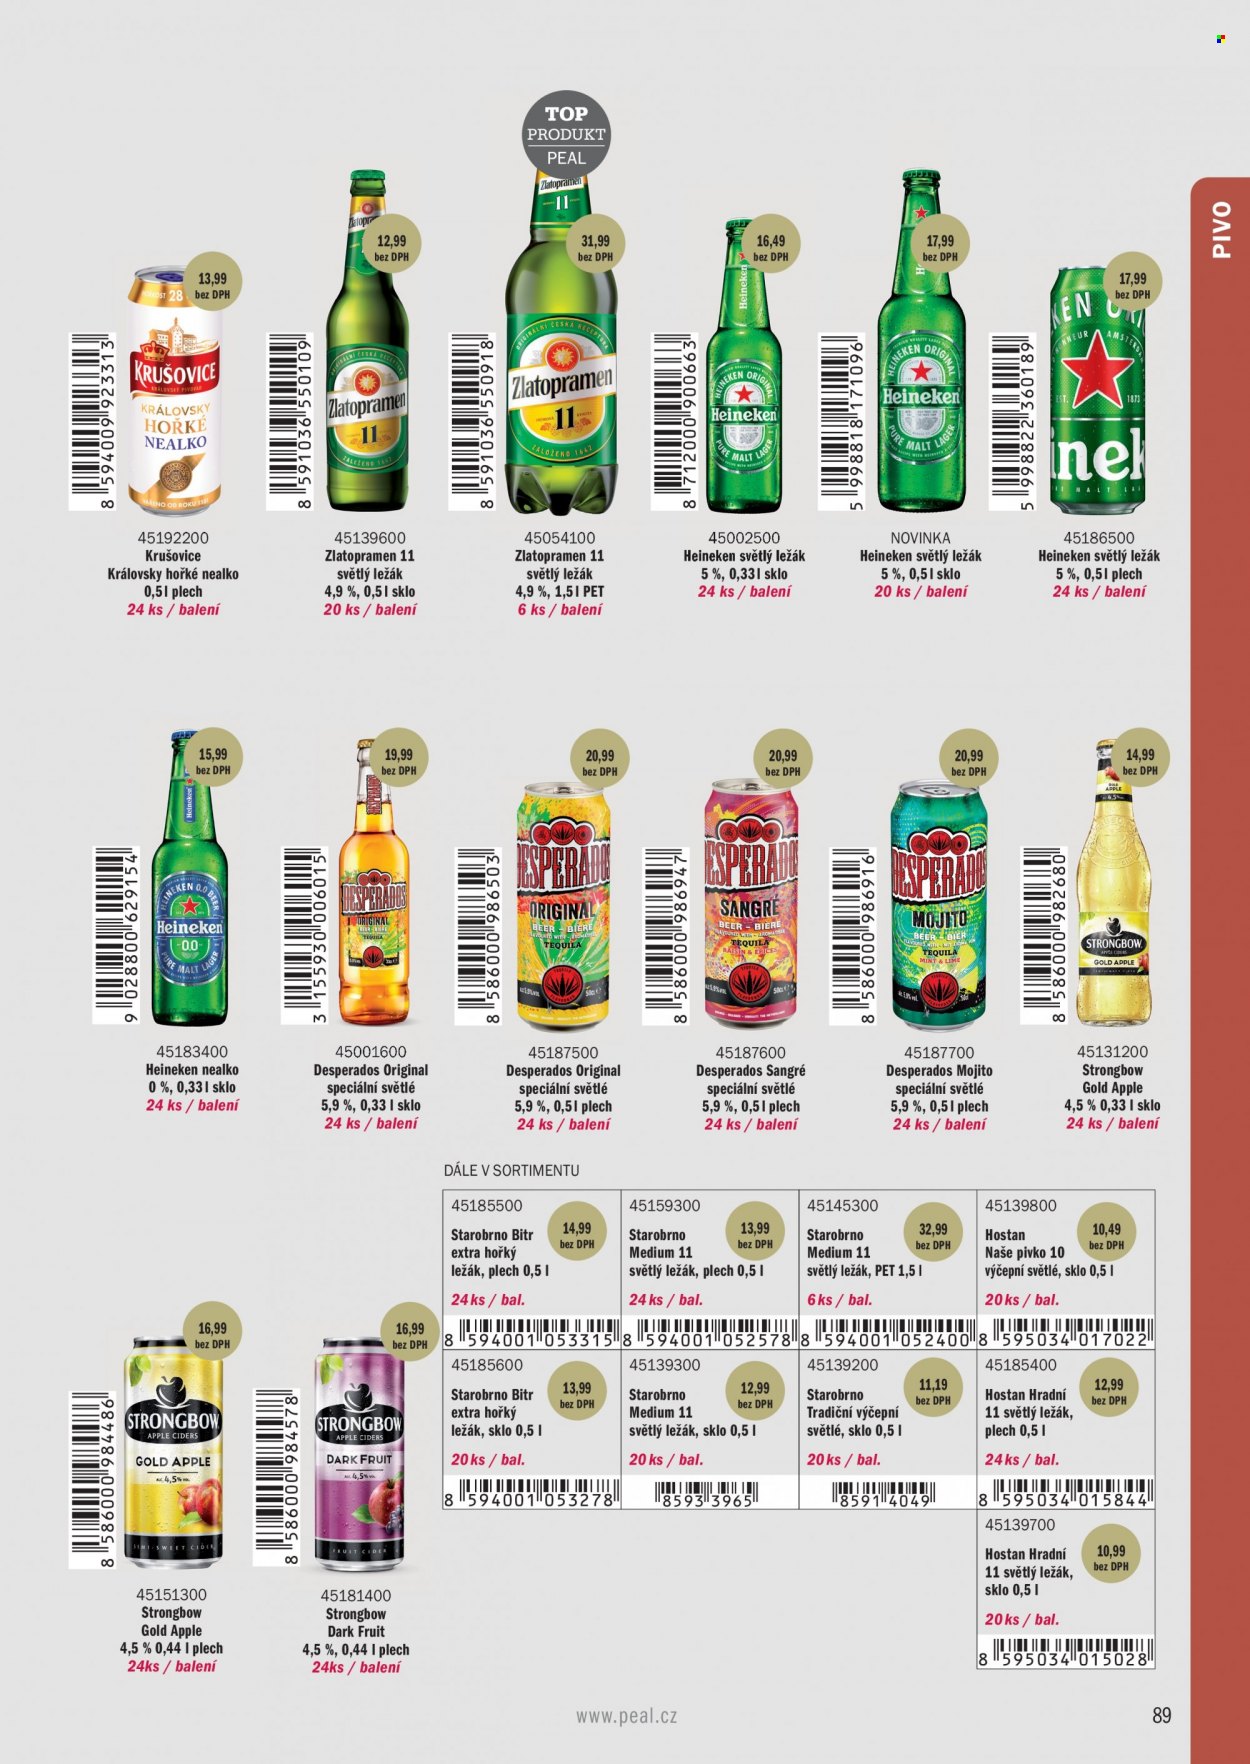 Leták PEAL - Produkty v akci - nealkoholický nápoj, světlé pivo, Zlatopramen, Krušovice, Královský ležák, světlý ležák, ležák, Heineken, Starobrno, nealkoholické pivo, Desperados, cider, Strongbow. Strana 47.